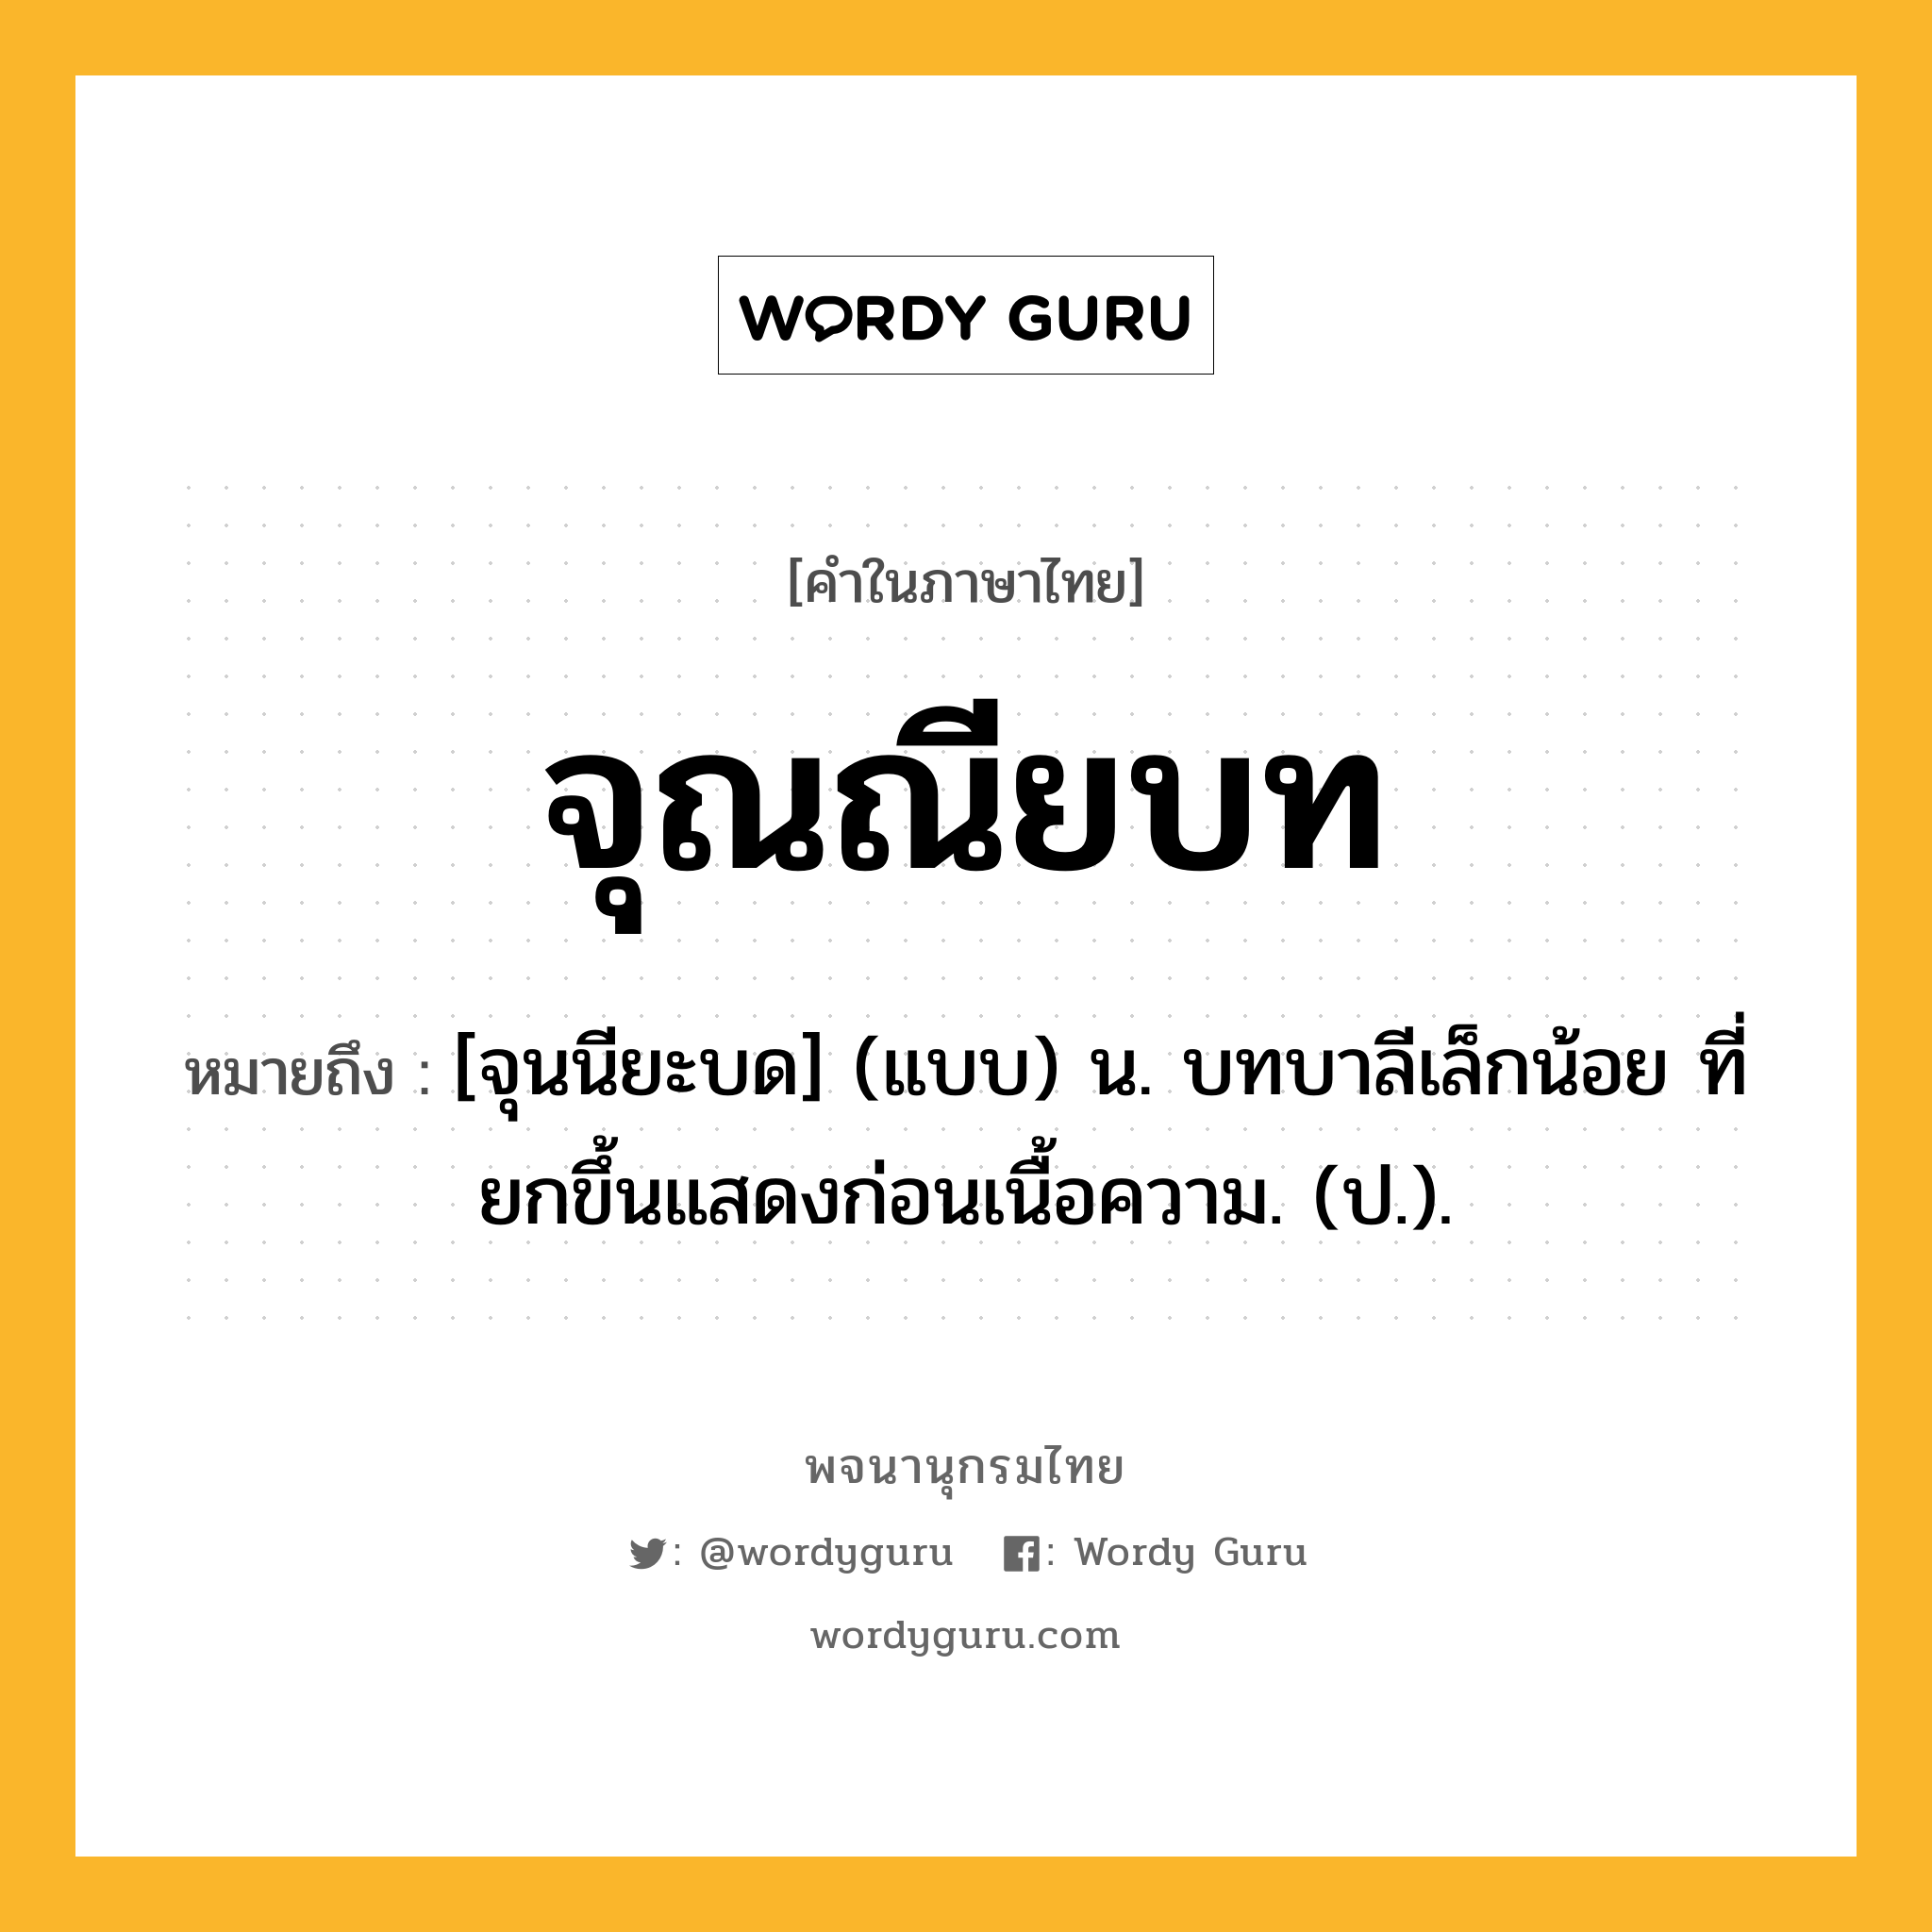 จุณณียบท ความหมาย หมายถึงอะไร?, คำในภาษาไทย จุณณียบท หมายถึง [จุนนียะบด] (แบบ) น. บทบาลีเล็กน้อย ที่ยกขึ้นแสดงก่อนเนื้อความ. (ป.).